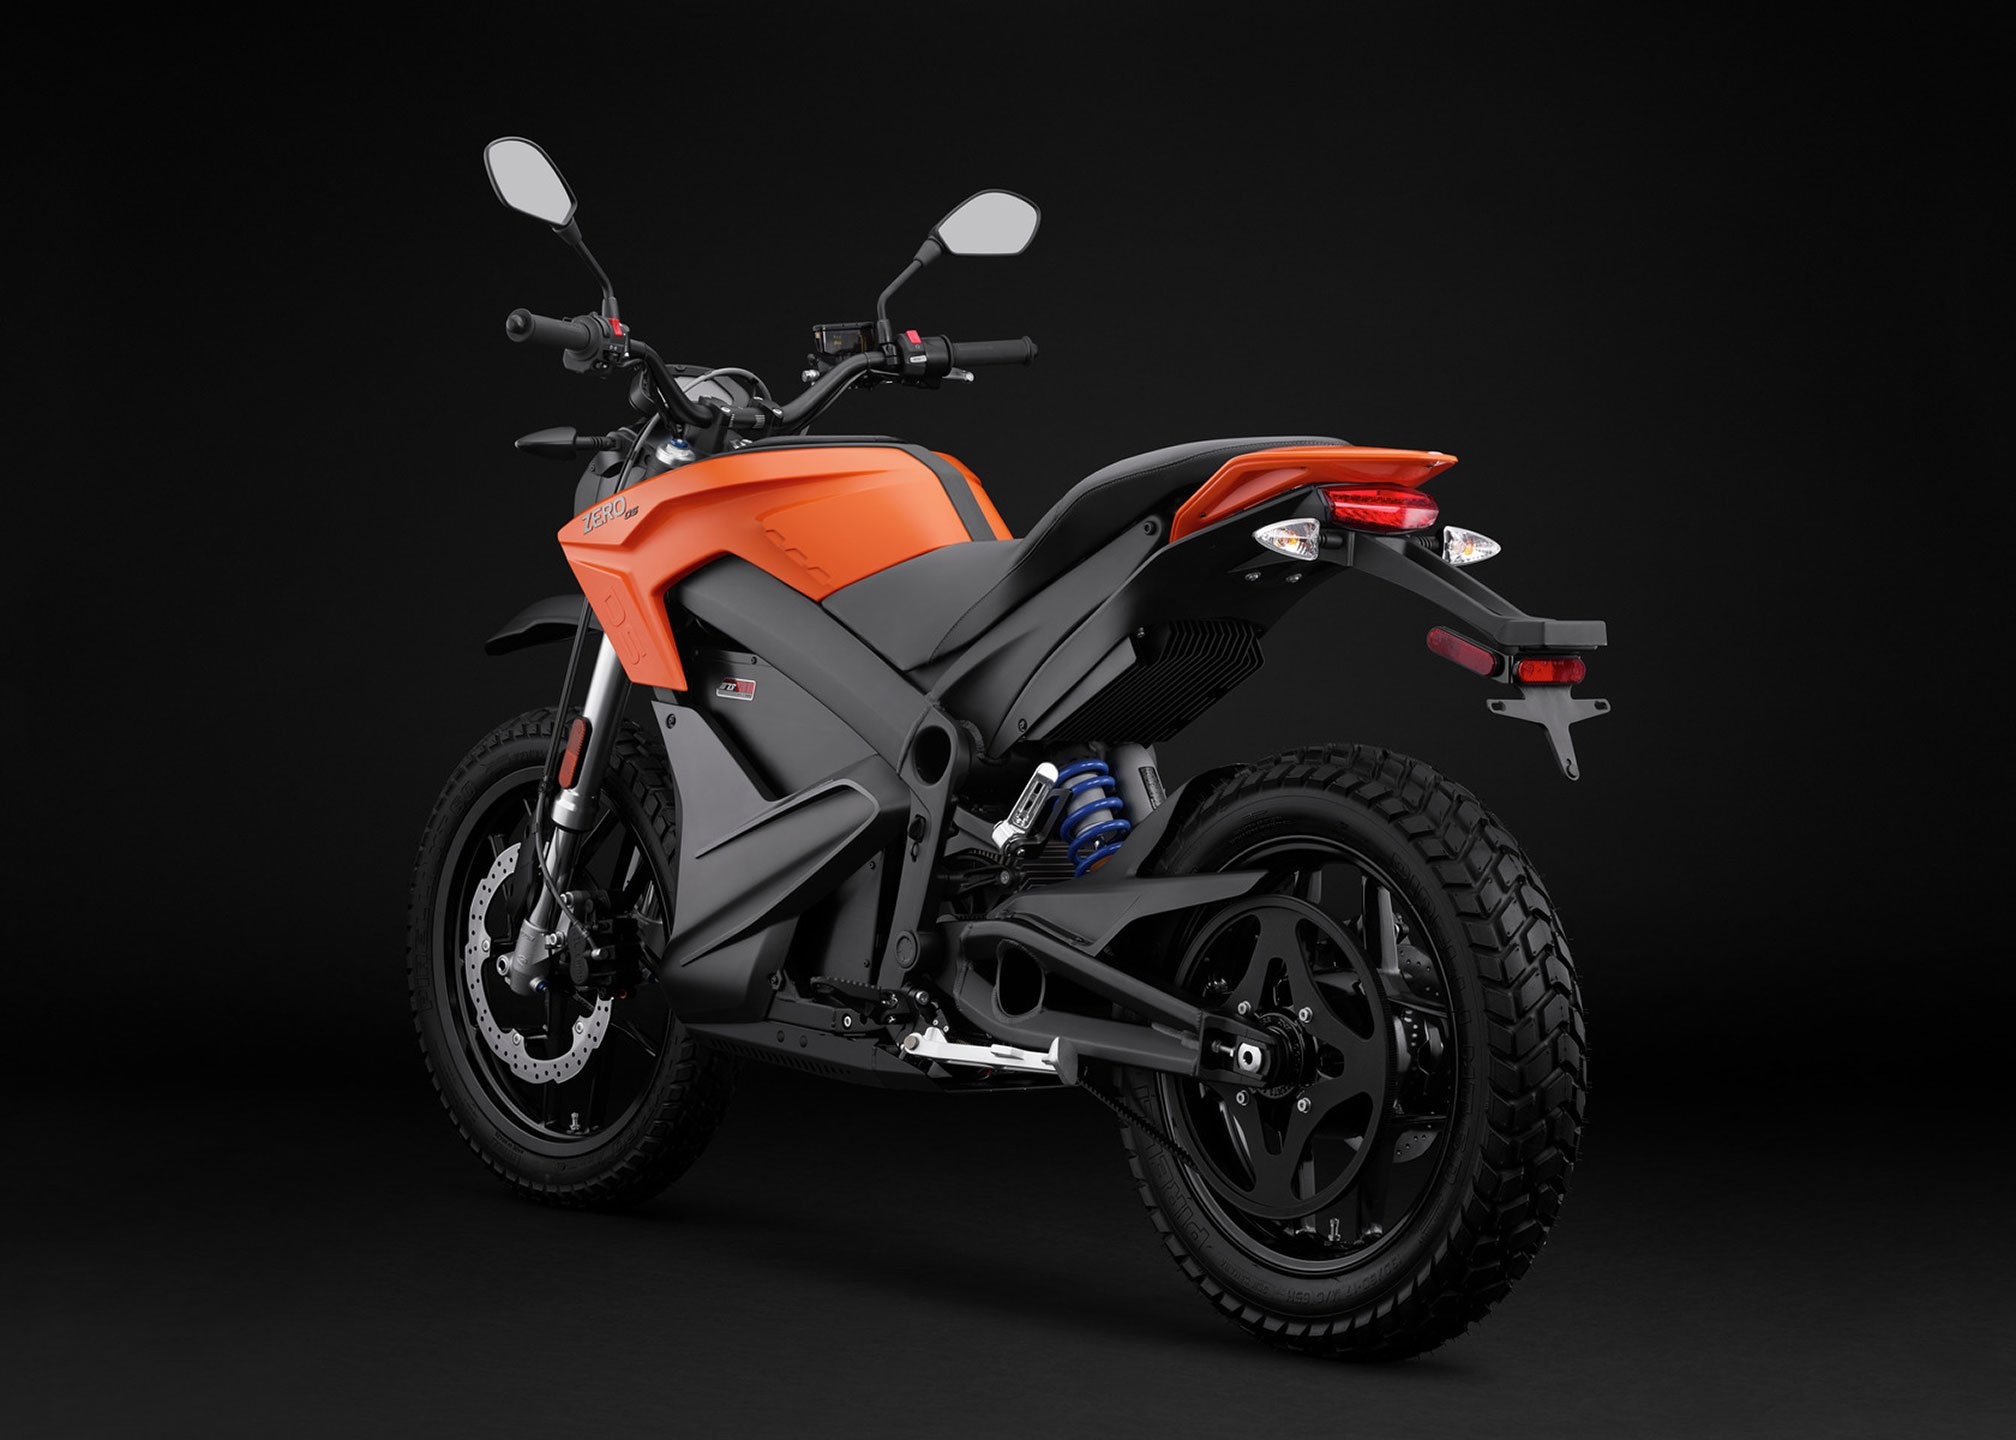 Zero DS 2016 bike, Motorbike wallpaper, Motorcycle excitement, Thrilling image, 2020x1440 HD Desktop